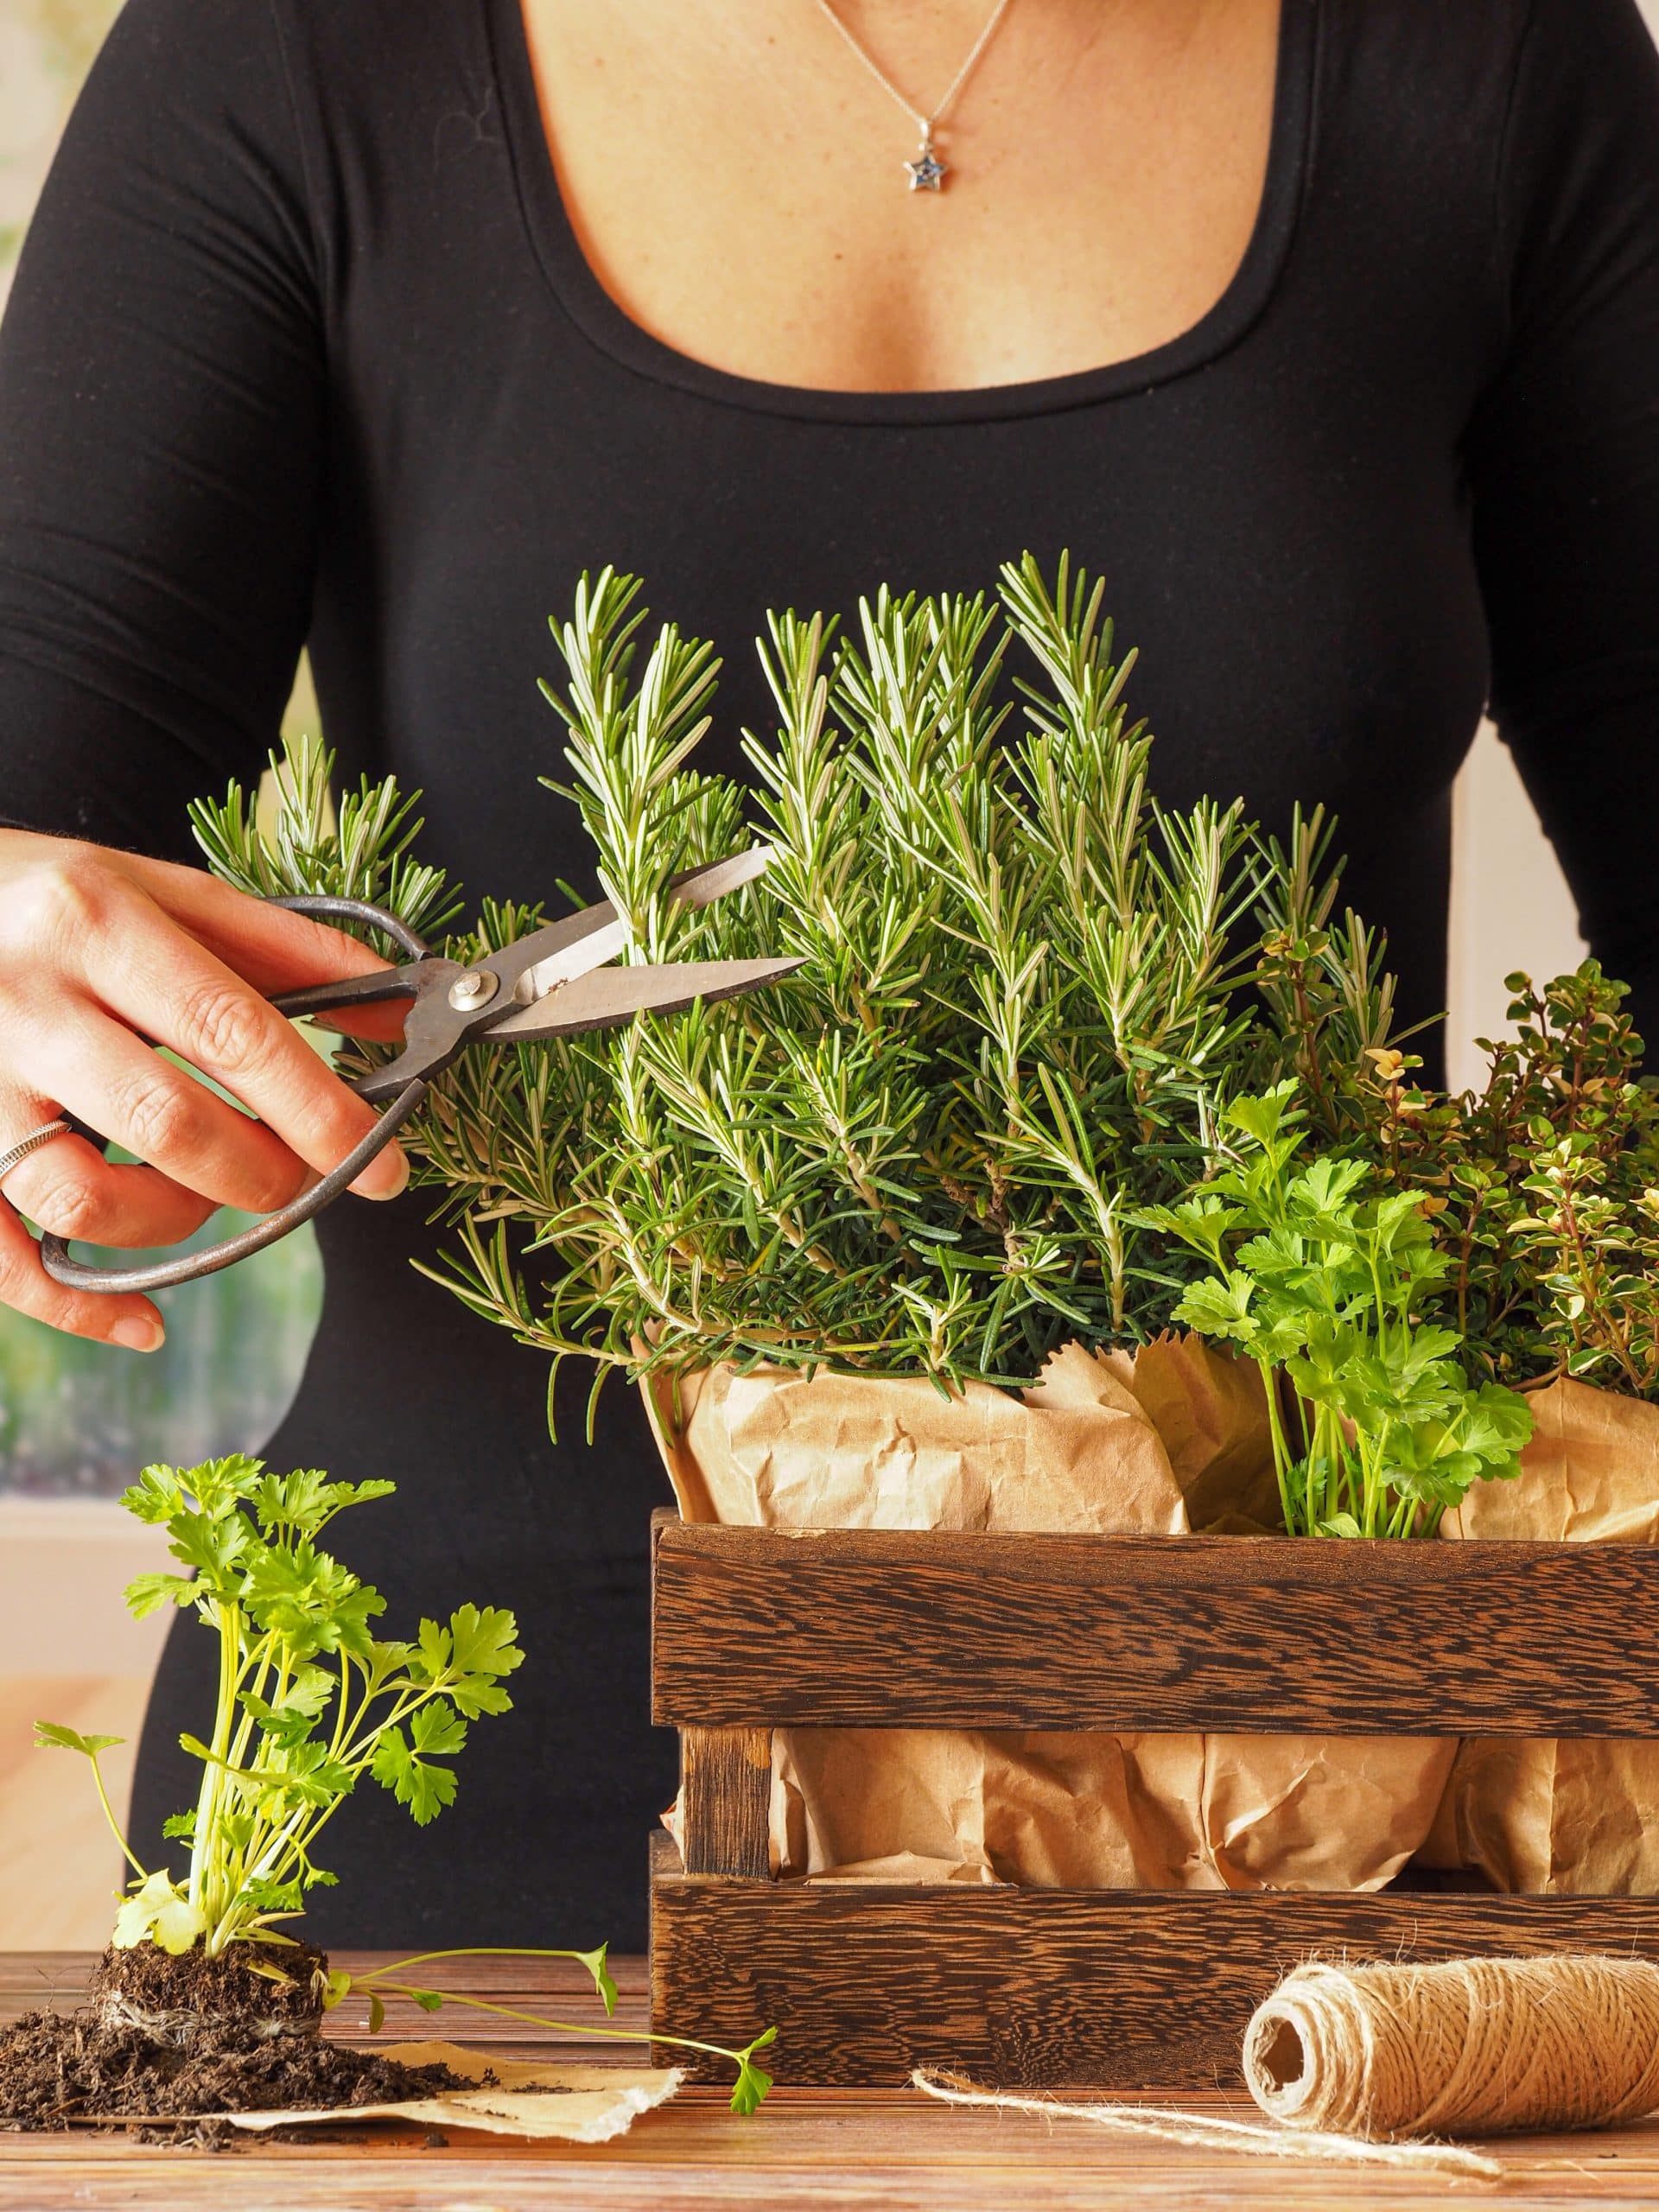 Cultiver son propre jardin aromatique en intérieur : conseils pour débutants.